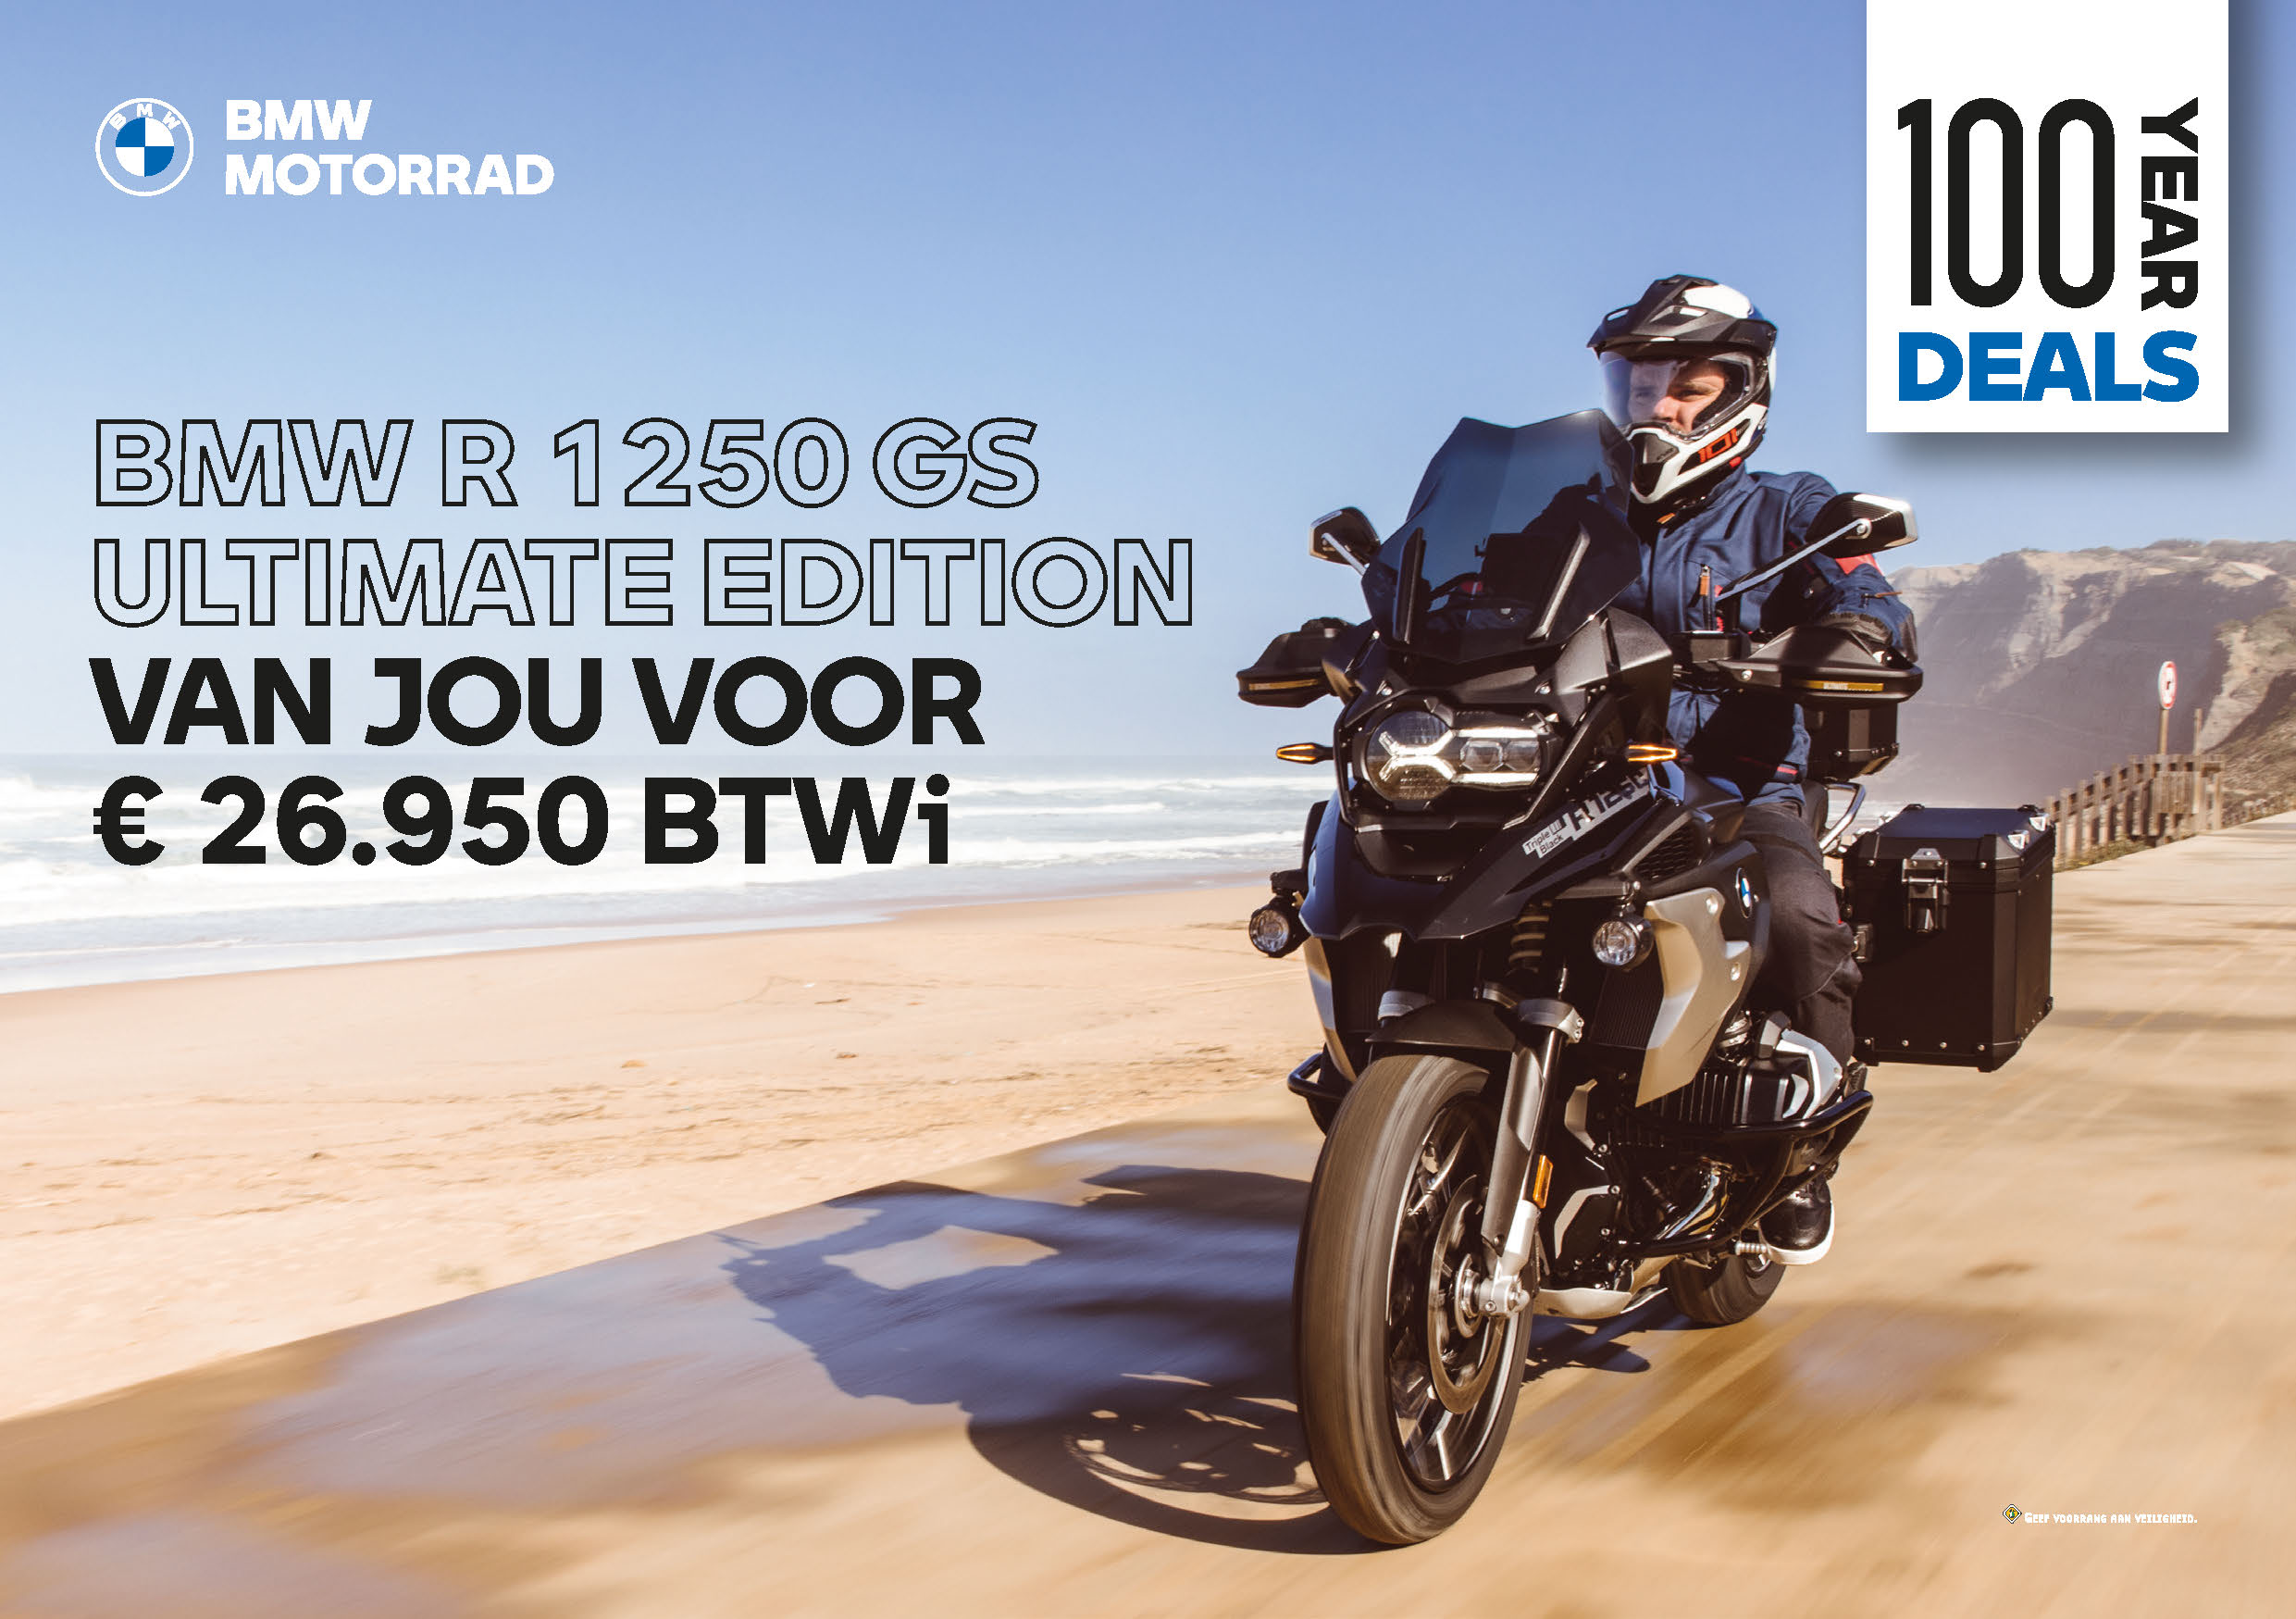 BMW Motorrad 100 Year Deals